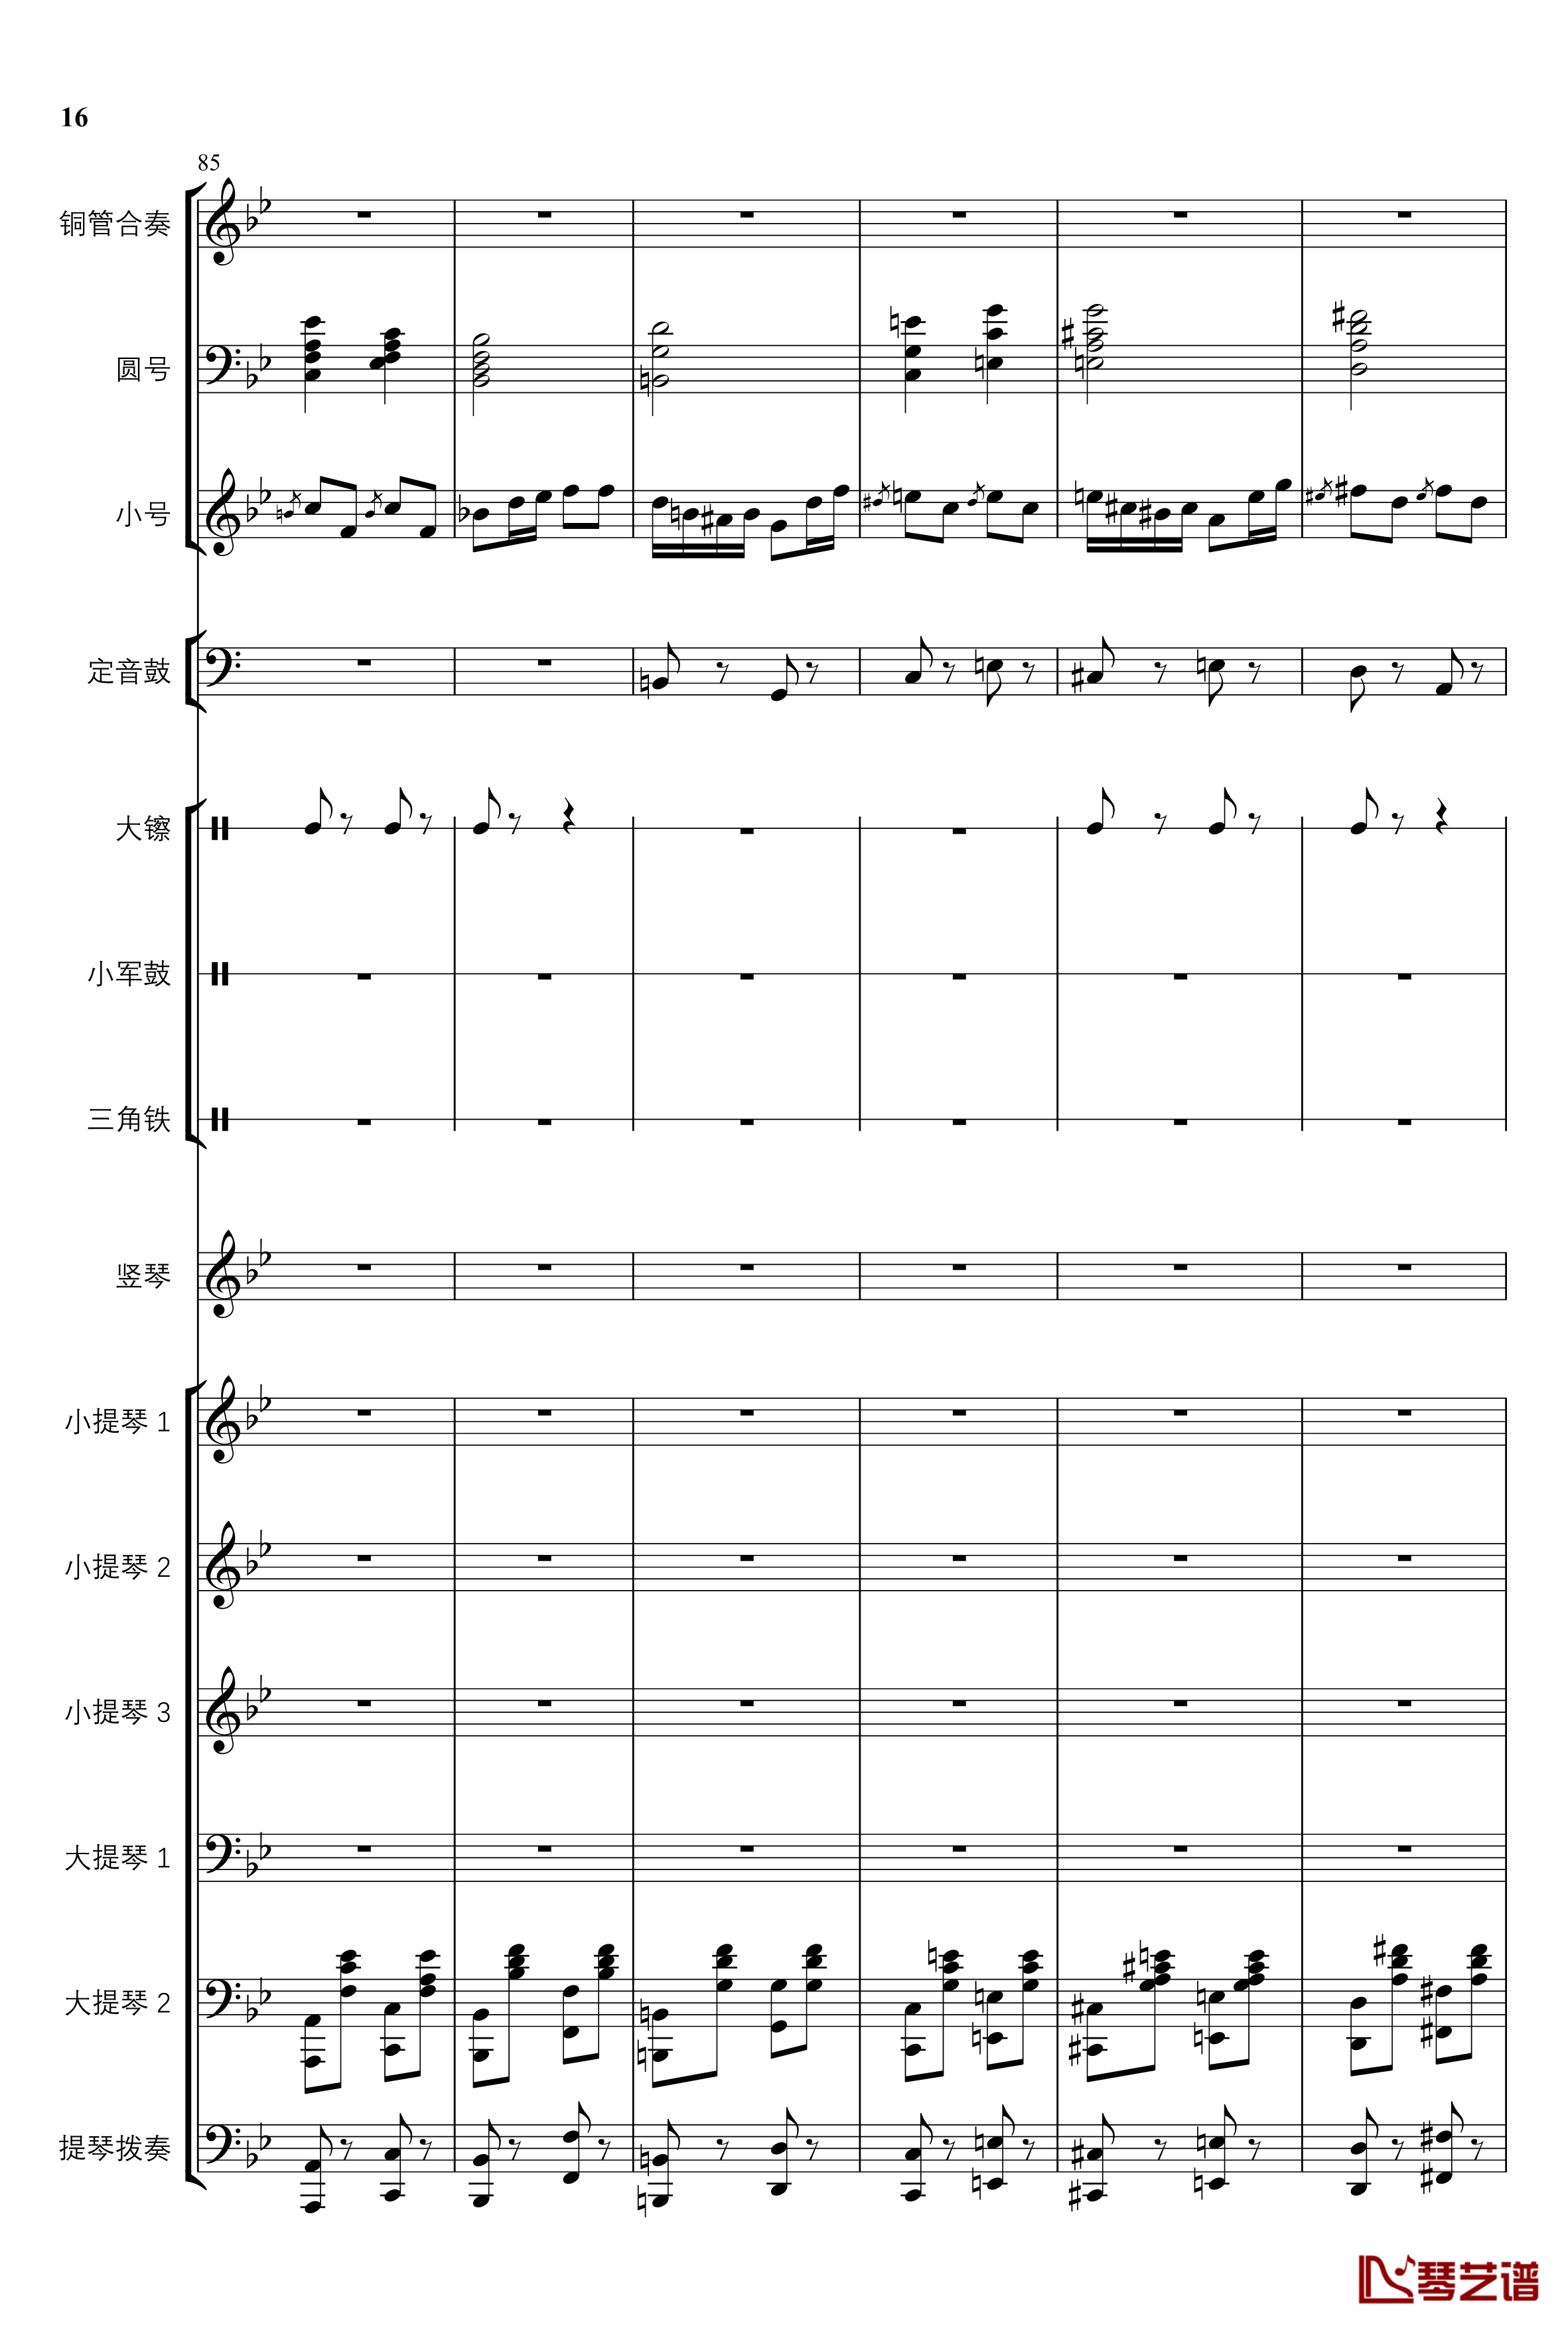 2013考试周的叙事曲钢琴谱-管弦乐重编曲版-江畔新绿16